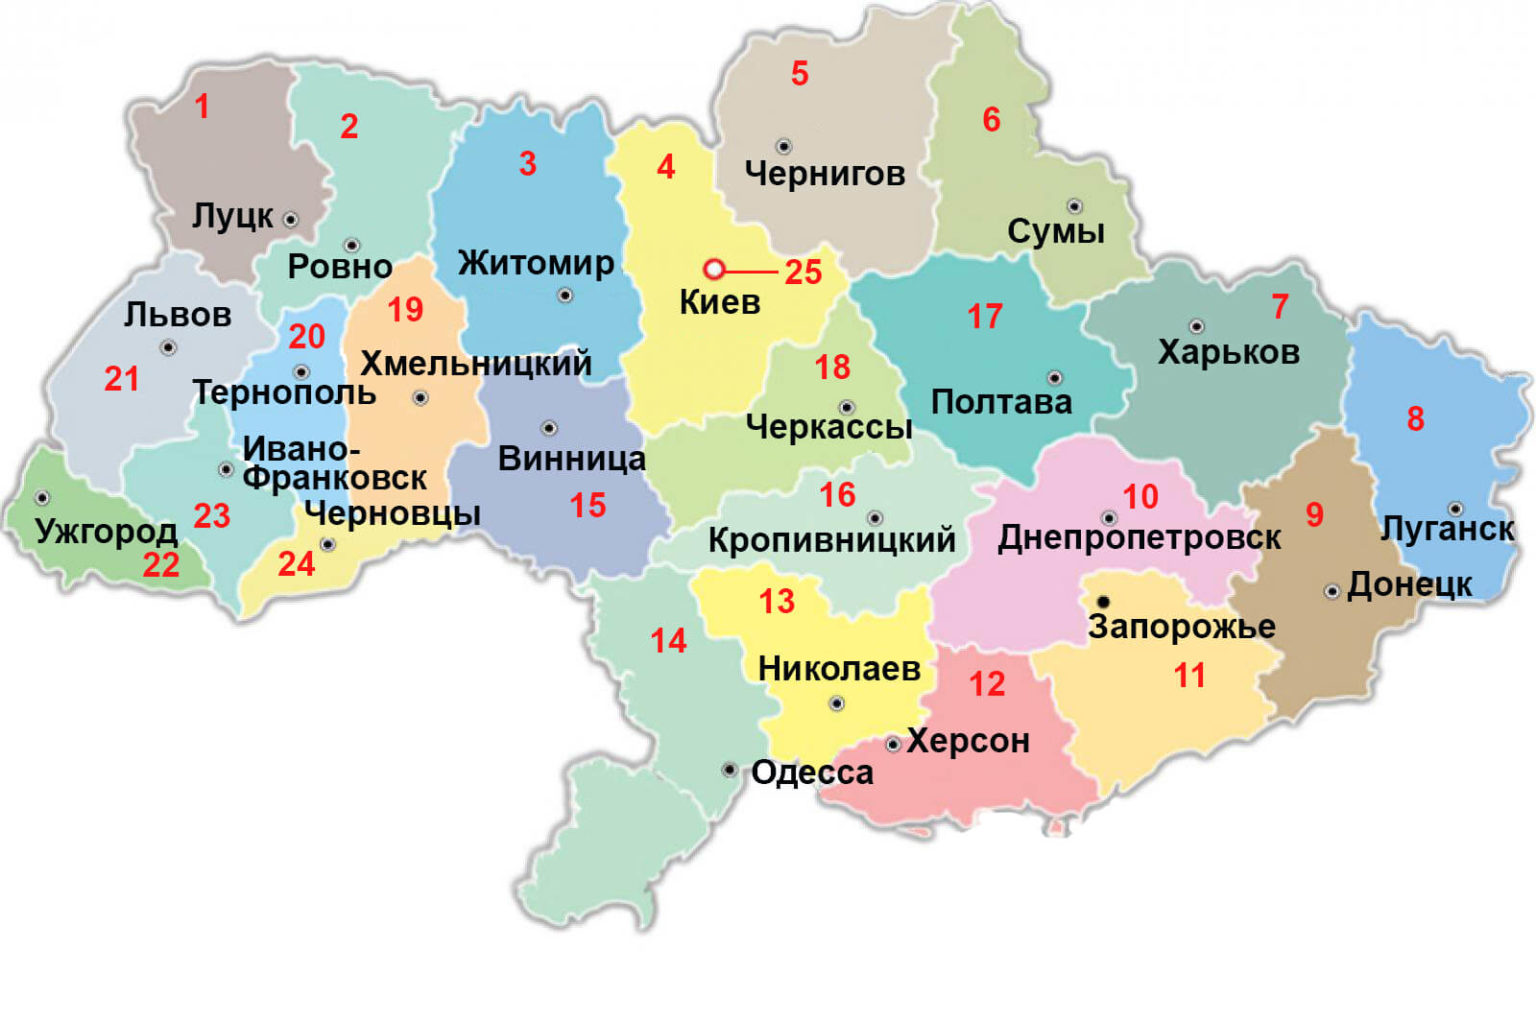 Карта на украинском 1034